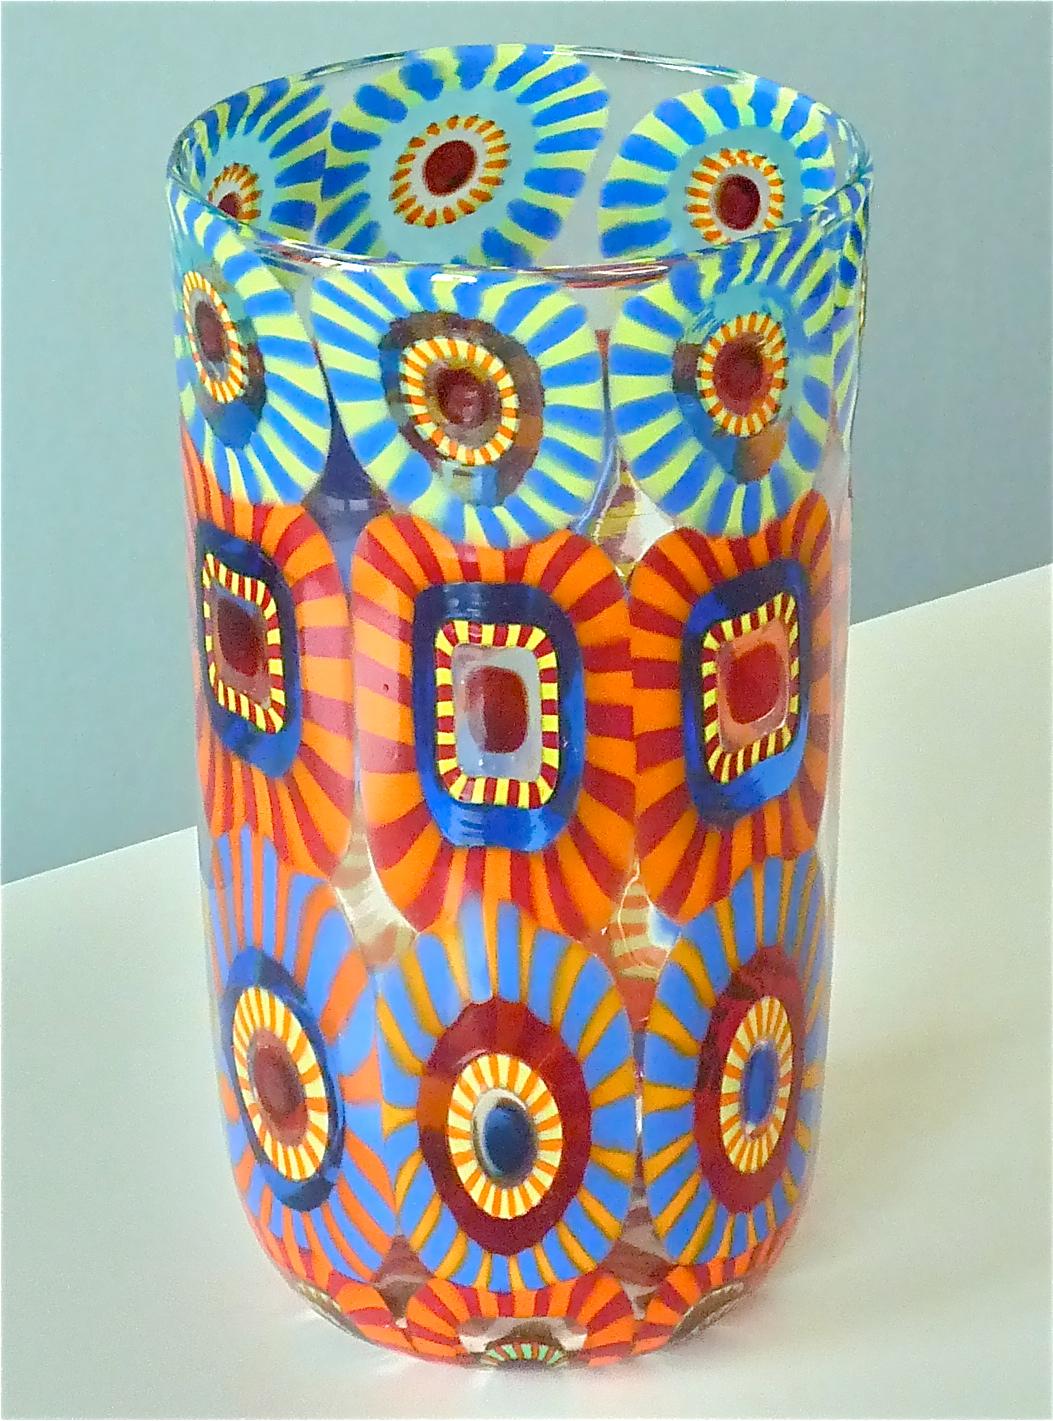 Eine große und farbenfrohe handgefertigte Murano Murine Kunstglasvase von Eli Vetri Dárte di Formentello aus Murano Italien, 21. Die Qualität der Kunstglasvase ist mit der von Venini und Barovier&Toso vergleichbar. Eine erstaunliche Komposition